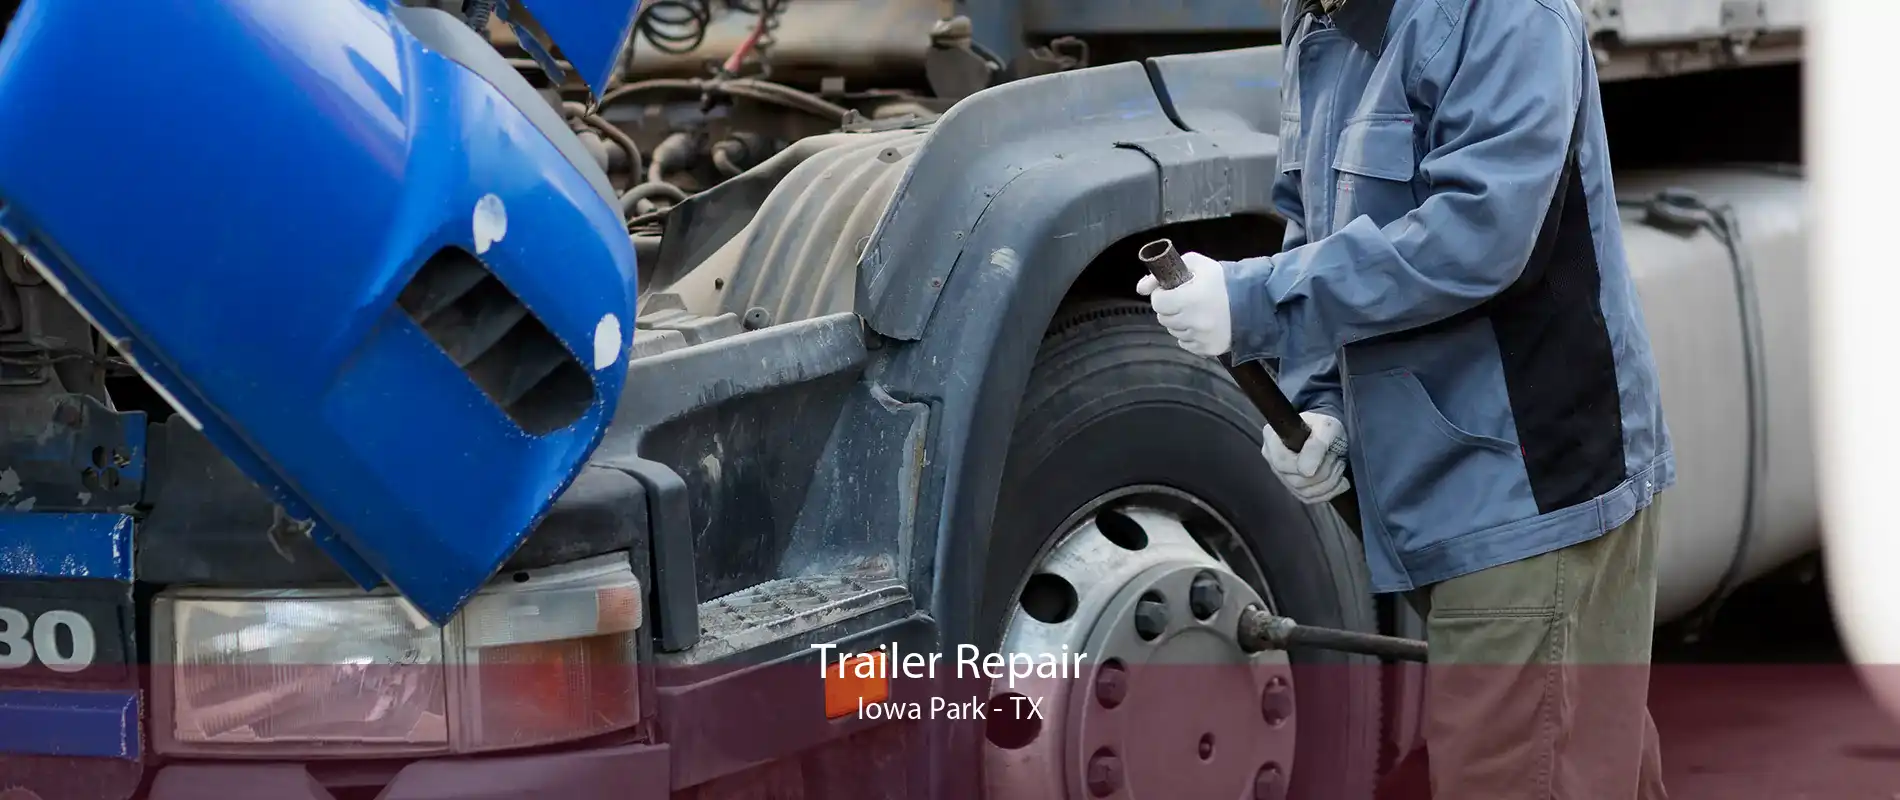 Trailer Repair Iowa Park - TX